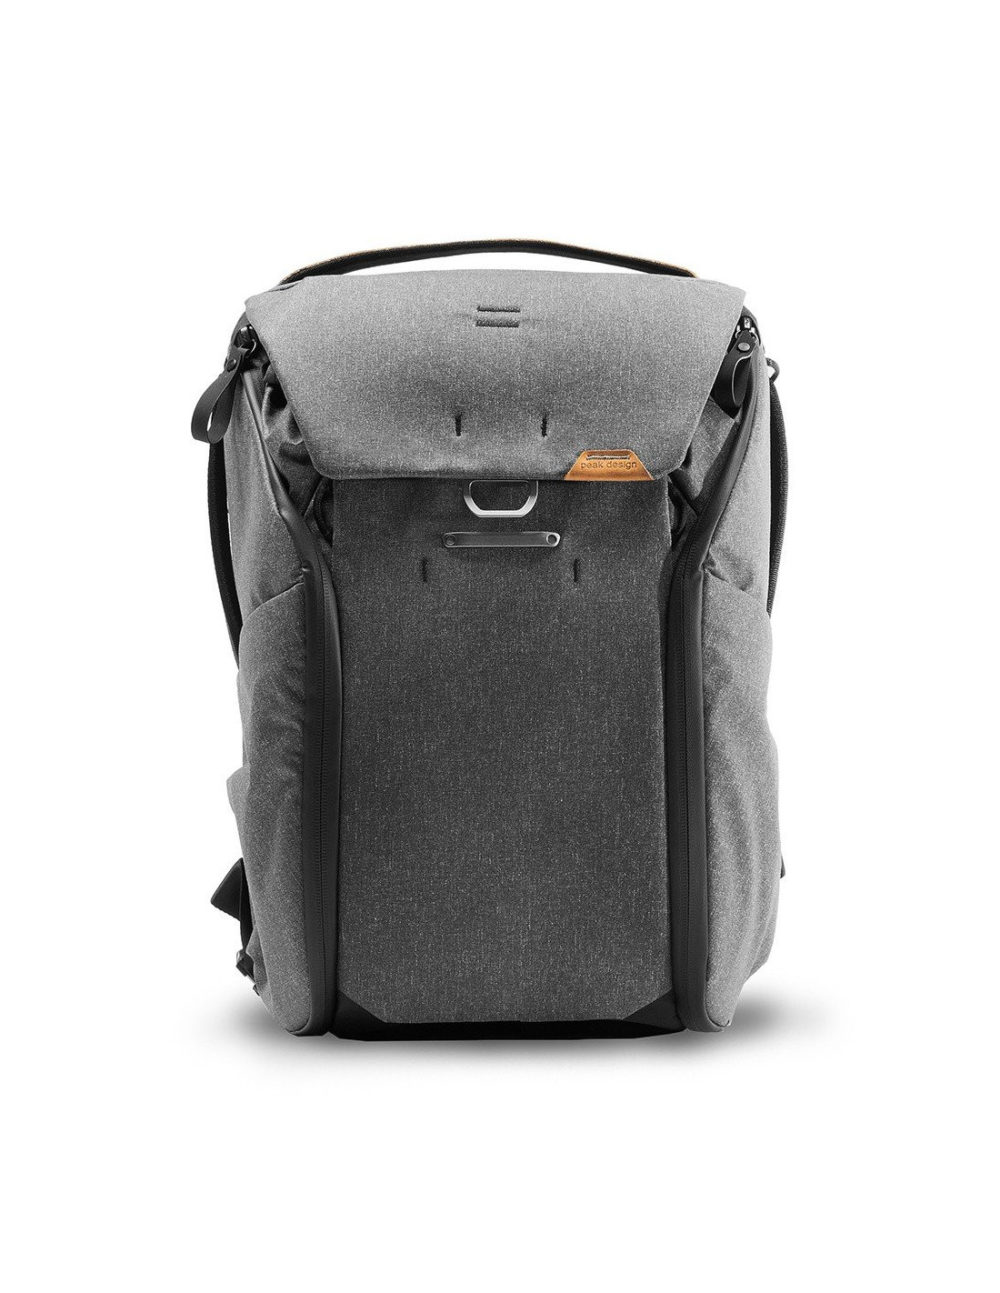 Plecak PEAK DESIGN Everyday Backpack 20L v2 - Grafitowy - EDLv2